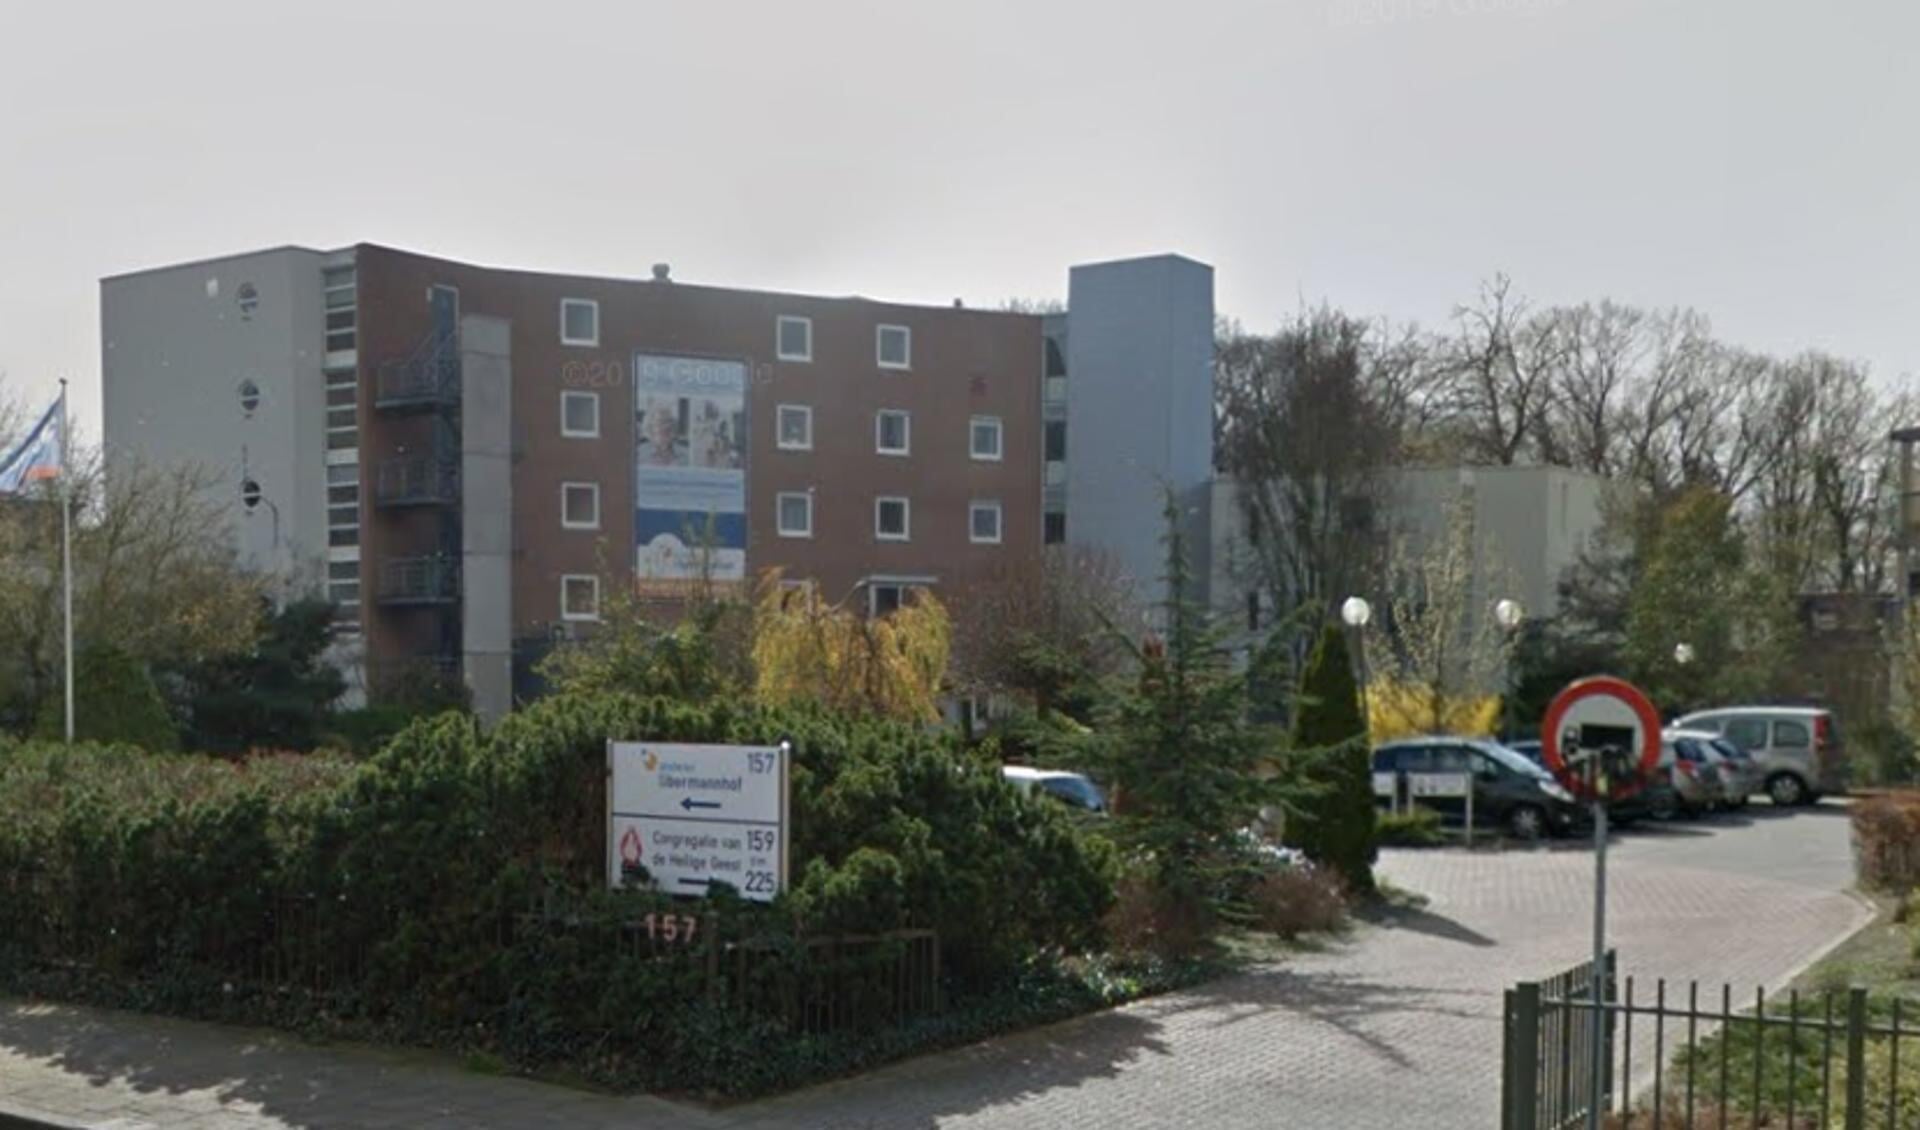 De beoogde locatie voor de hospice was Proteion Libermannhof in Gennep. (foto: Google Street View)